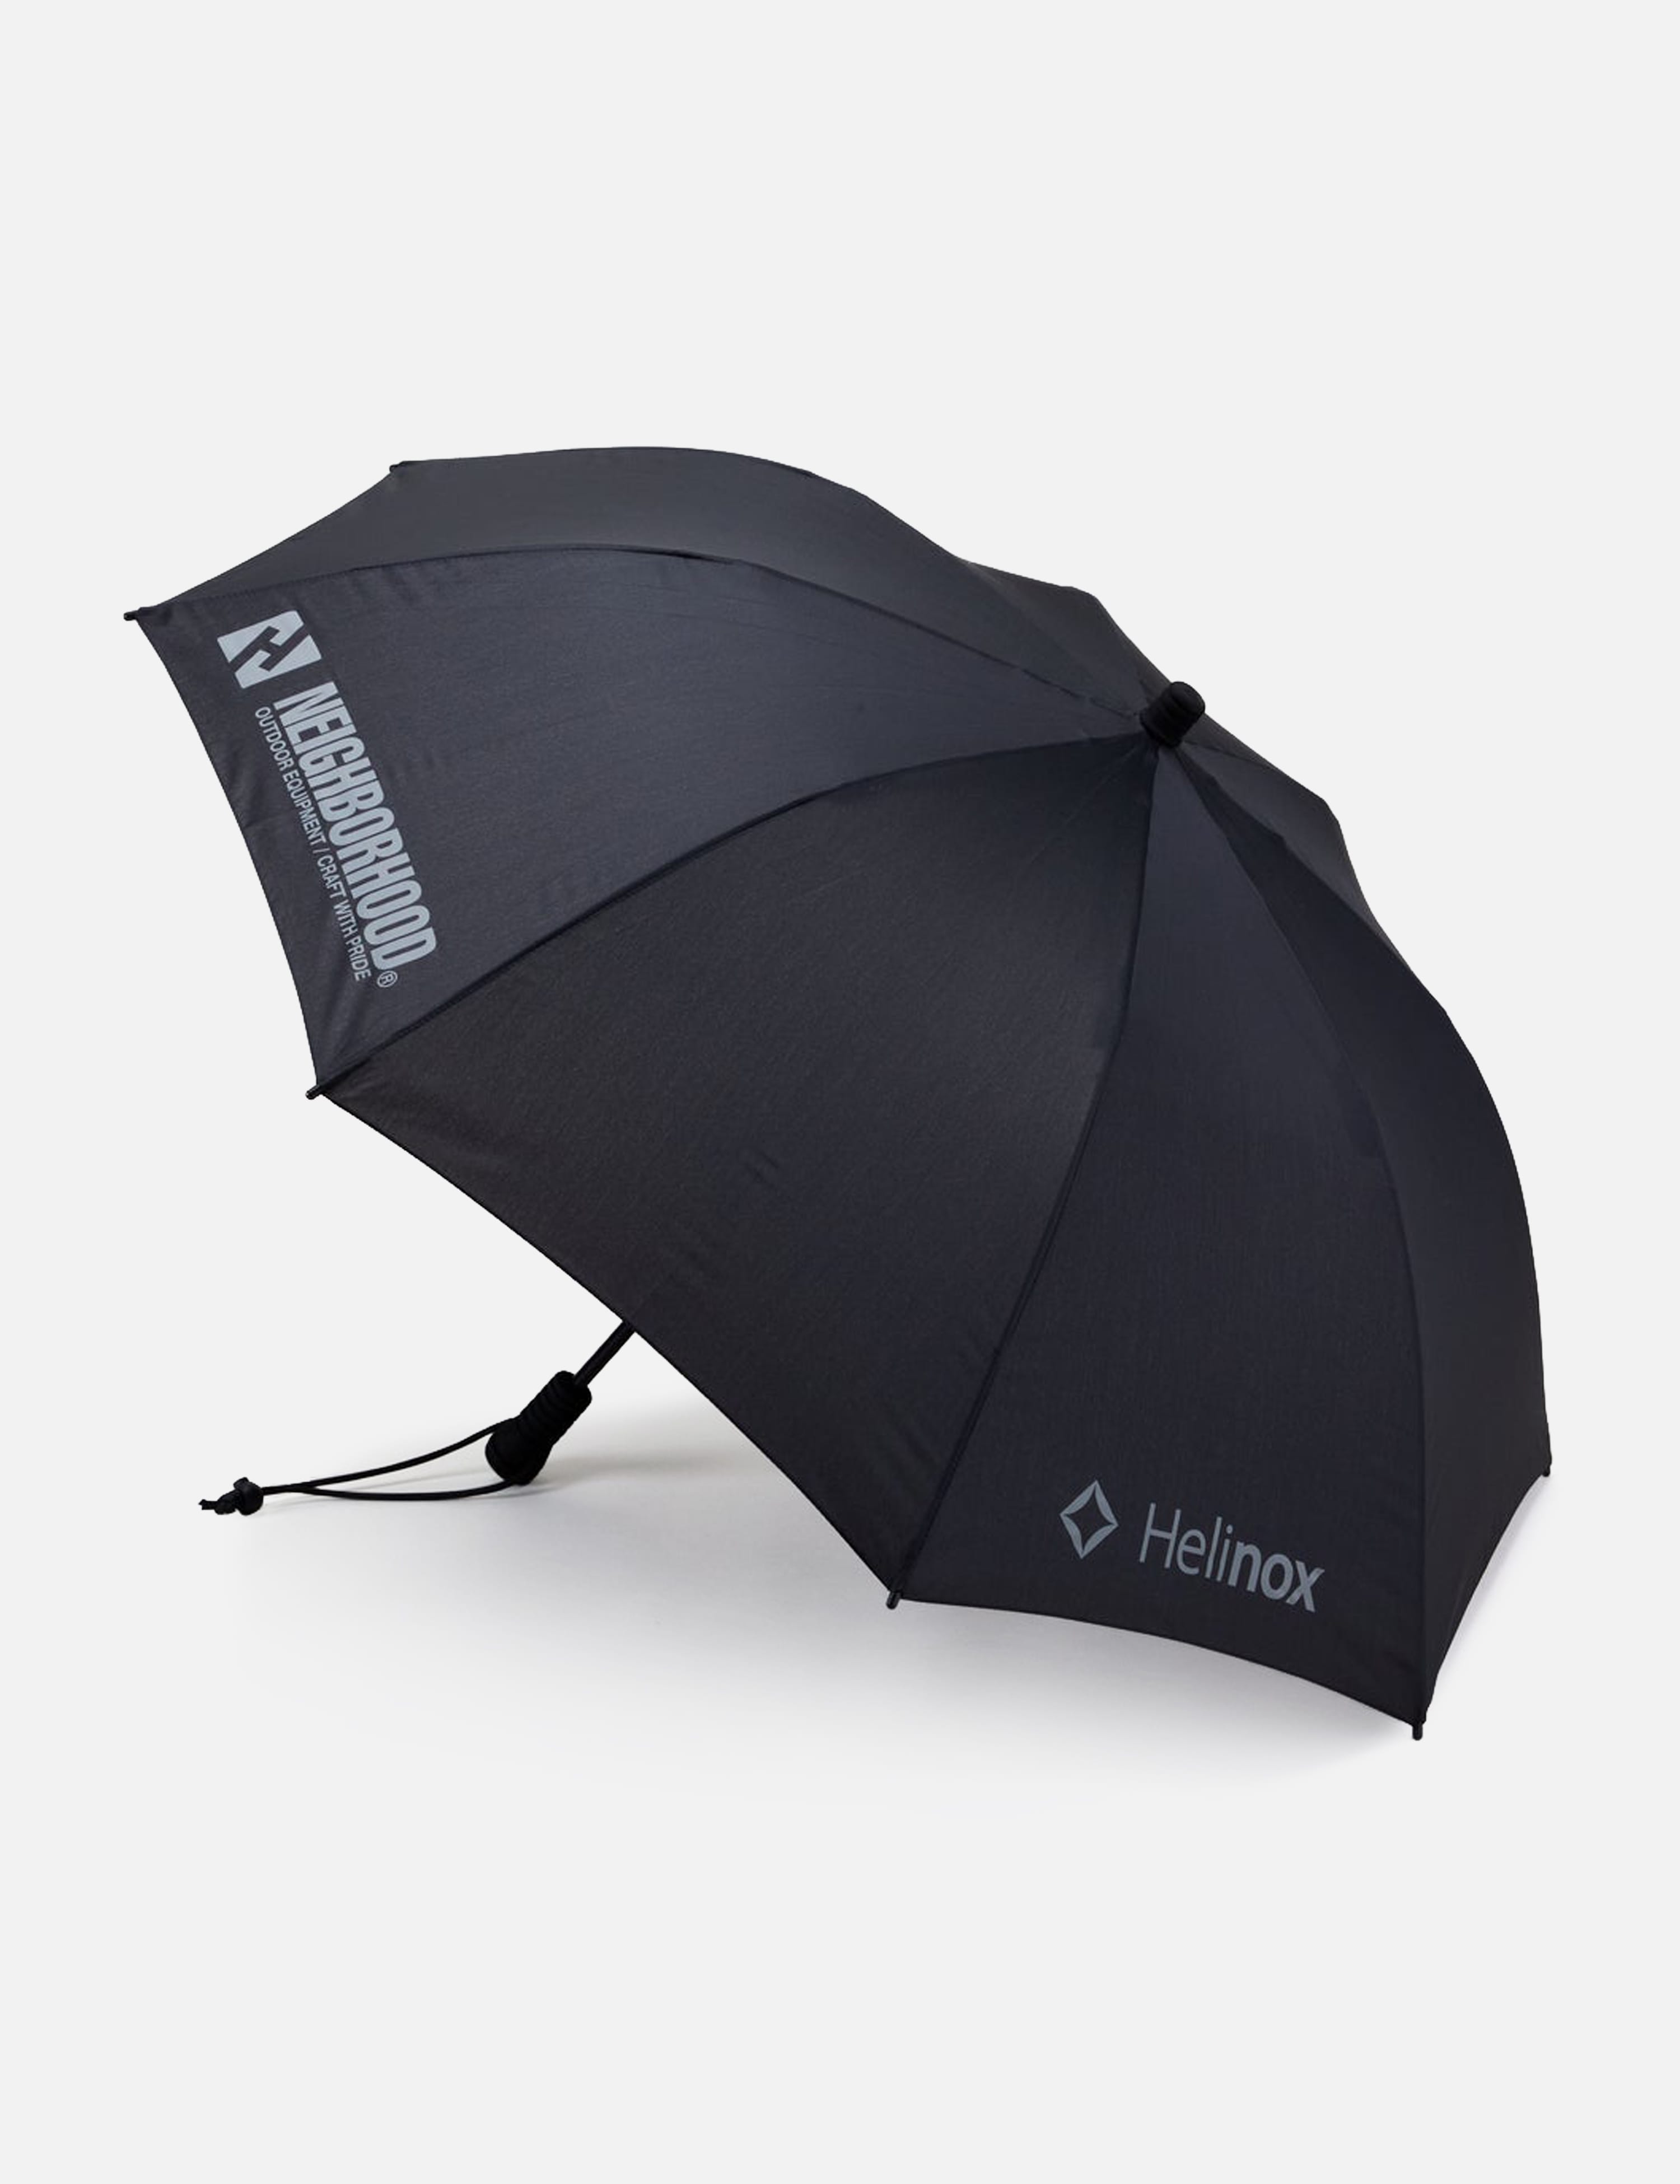 NEIGHBORHOOD - Neighborhood x Helinox Umbrella | HBX - Globally